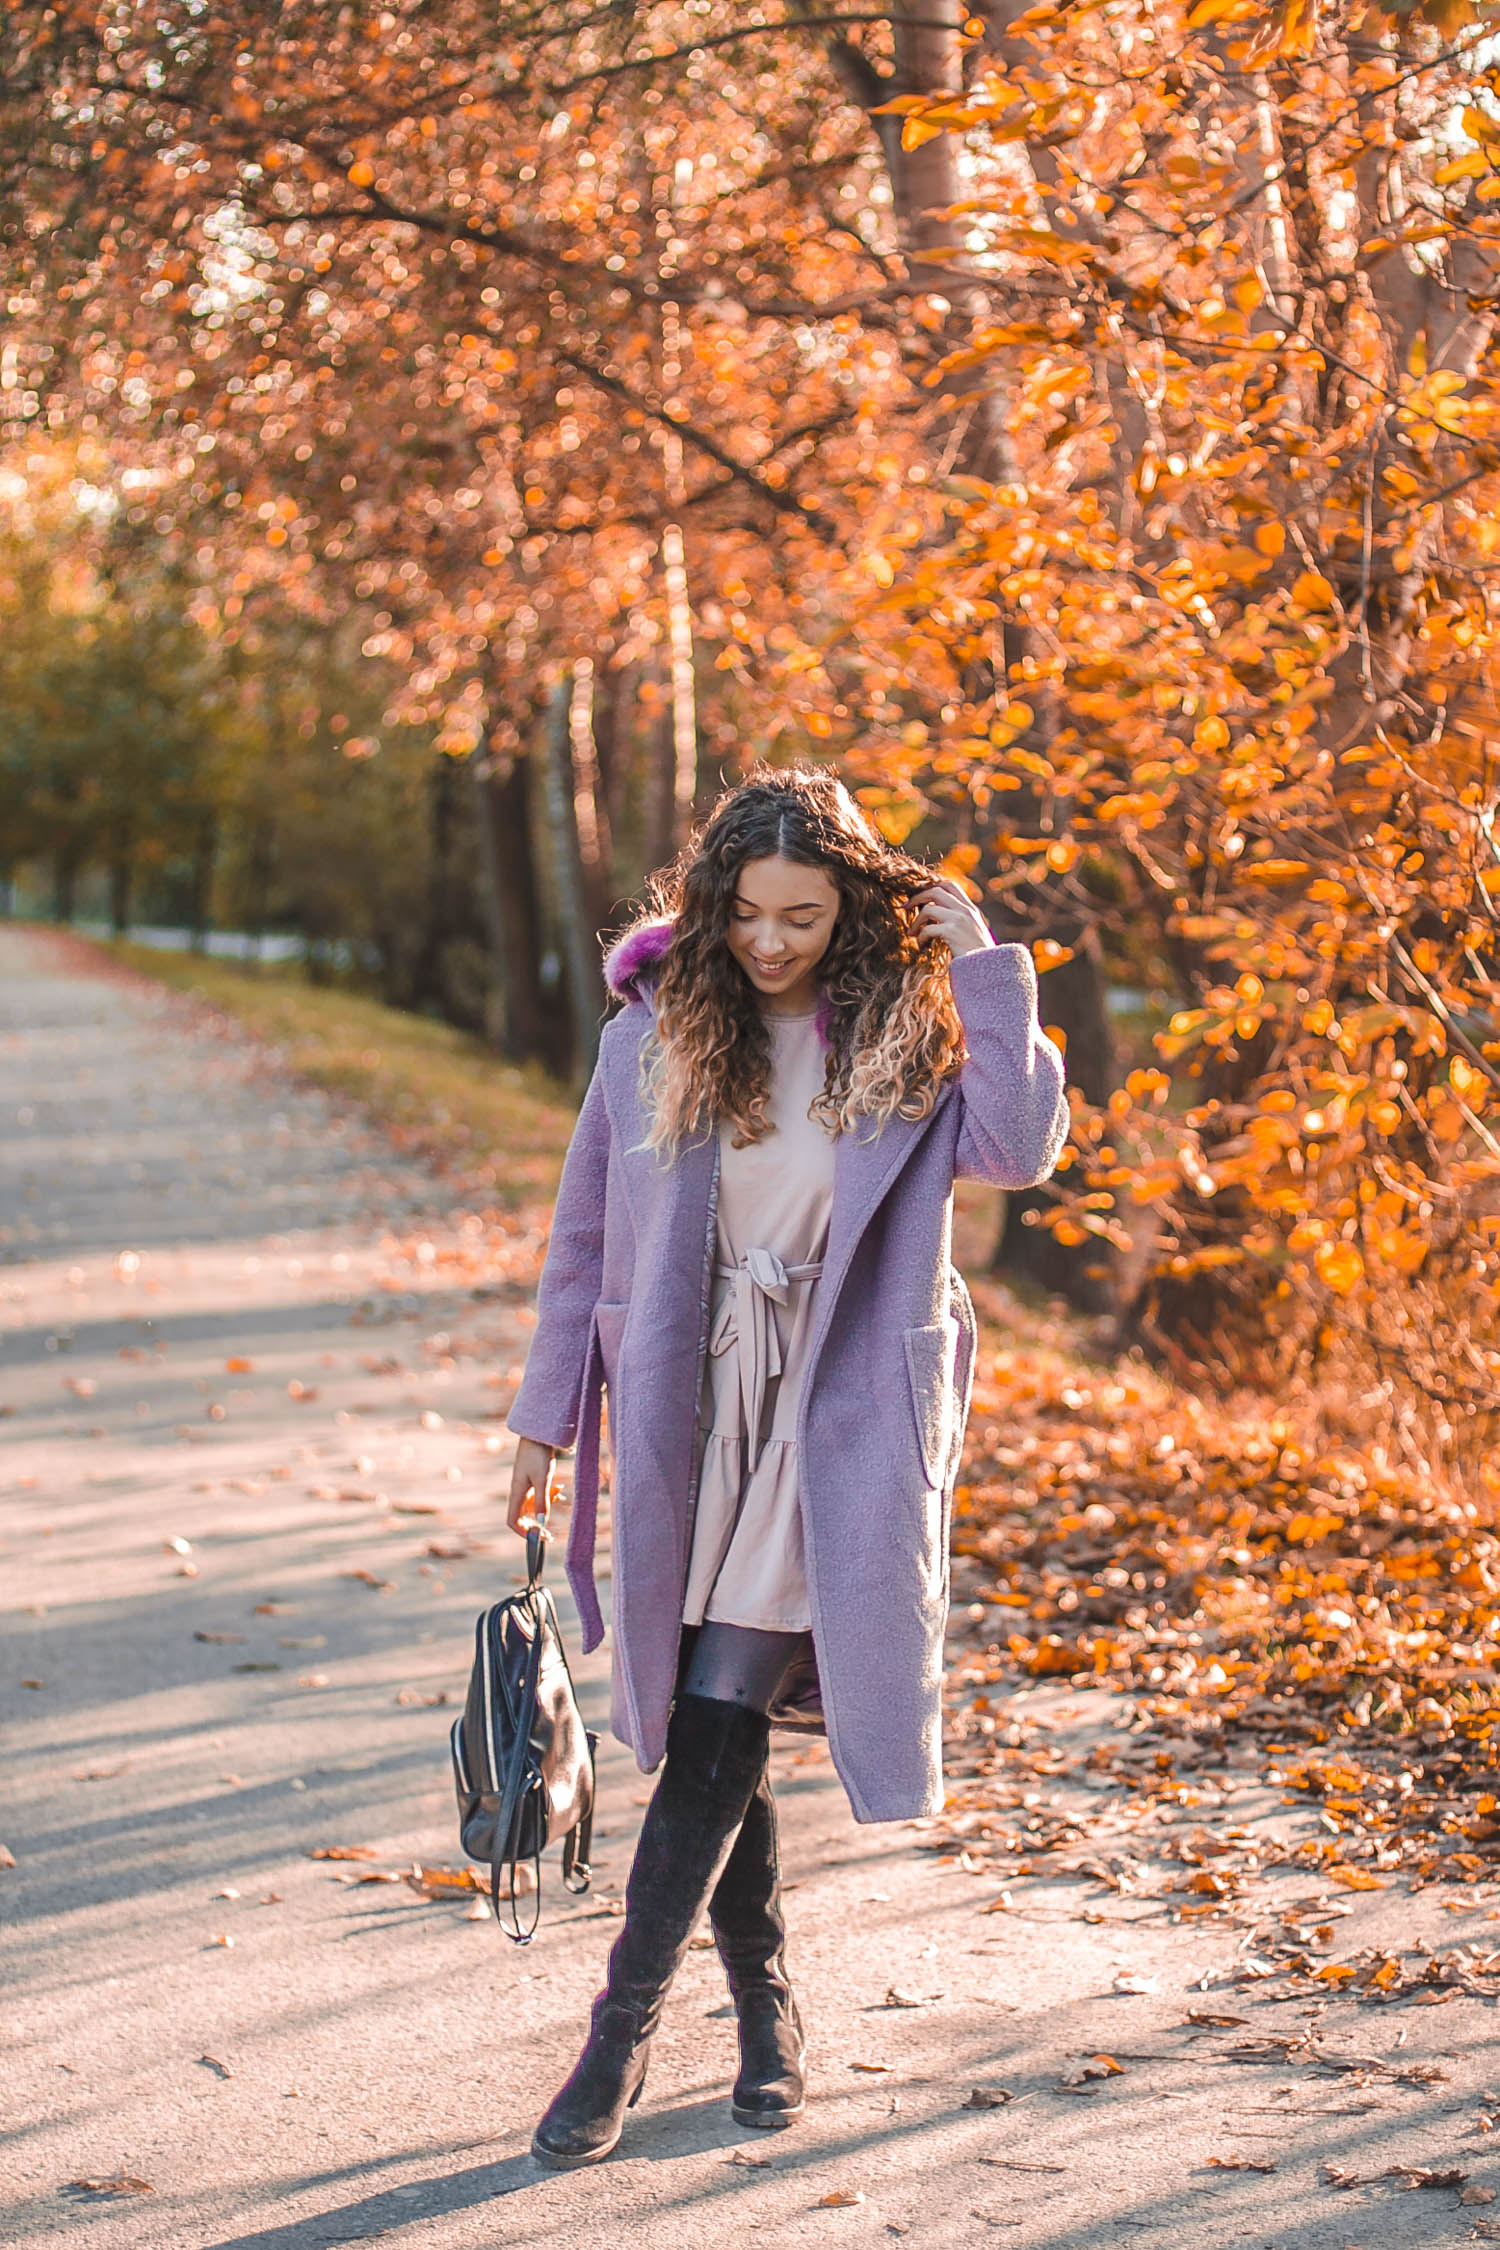 fioletowy płaszcz na jesień